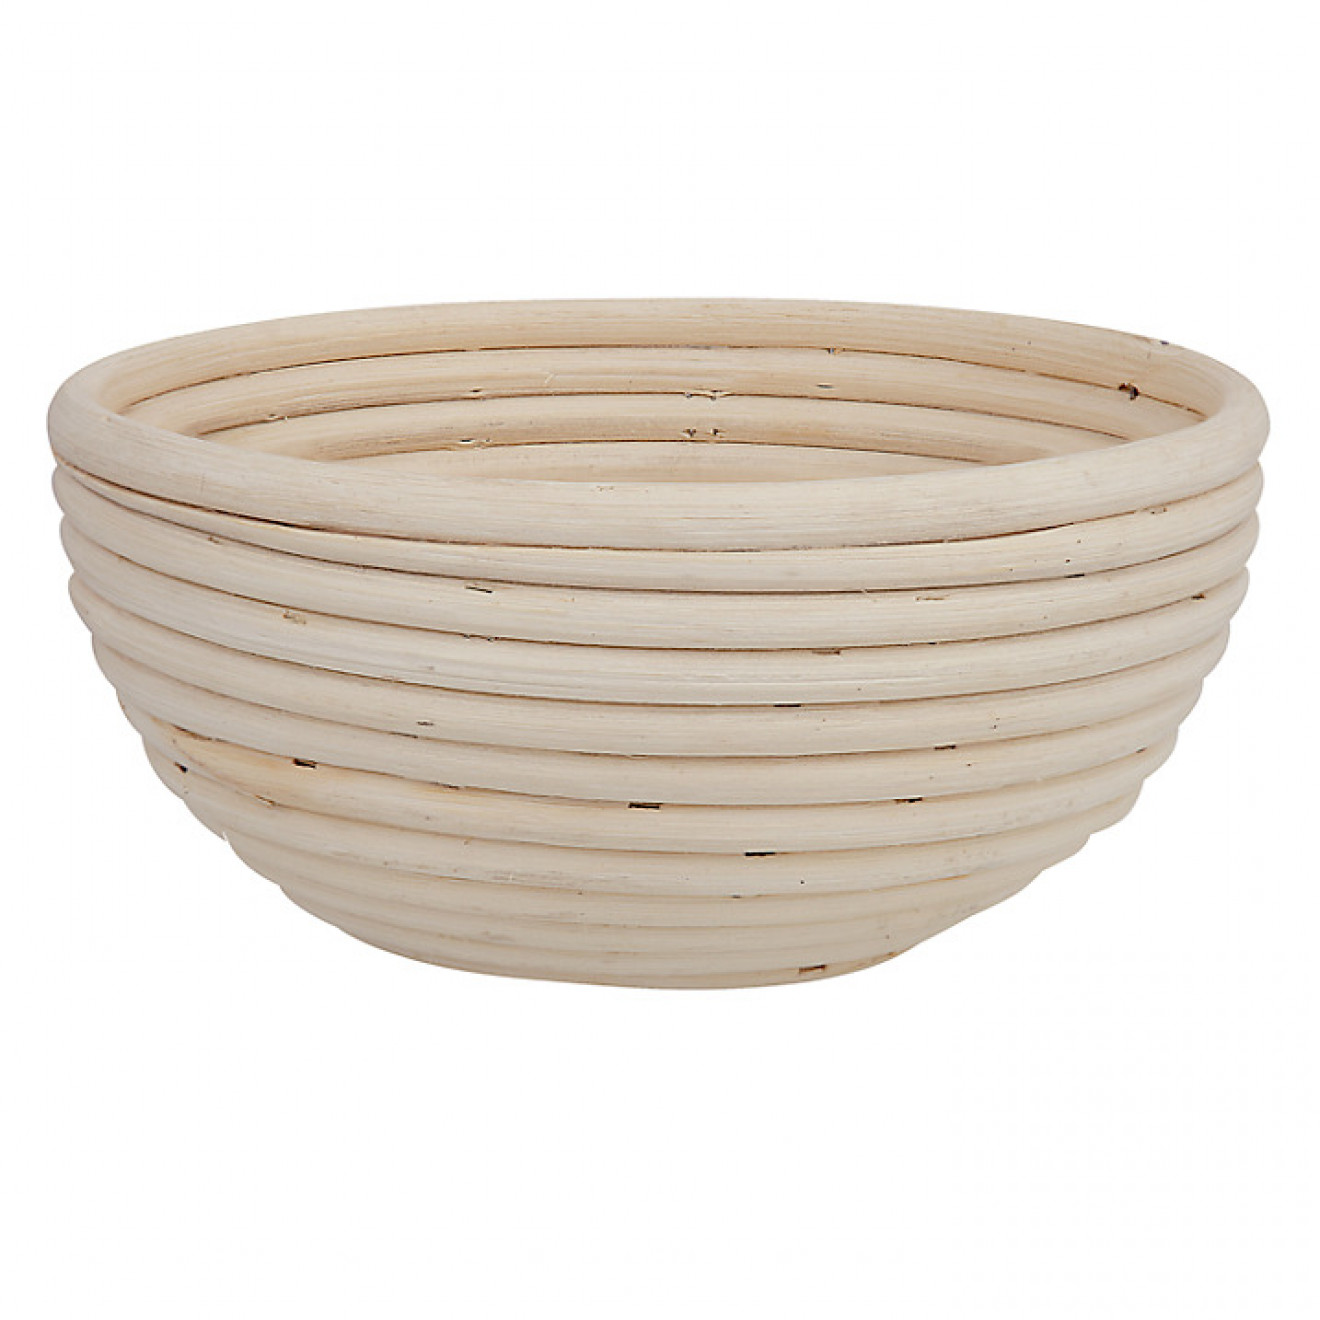 Banneton Bread Dough Proofing Basket, Round 7.48Inch (19cm) for 1.1lb (0.5kg) Dough